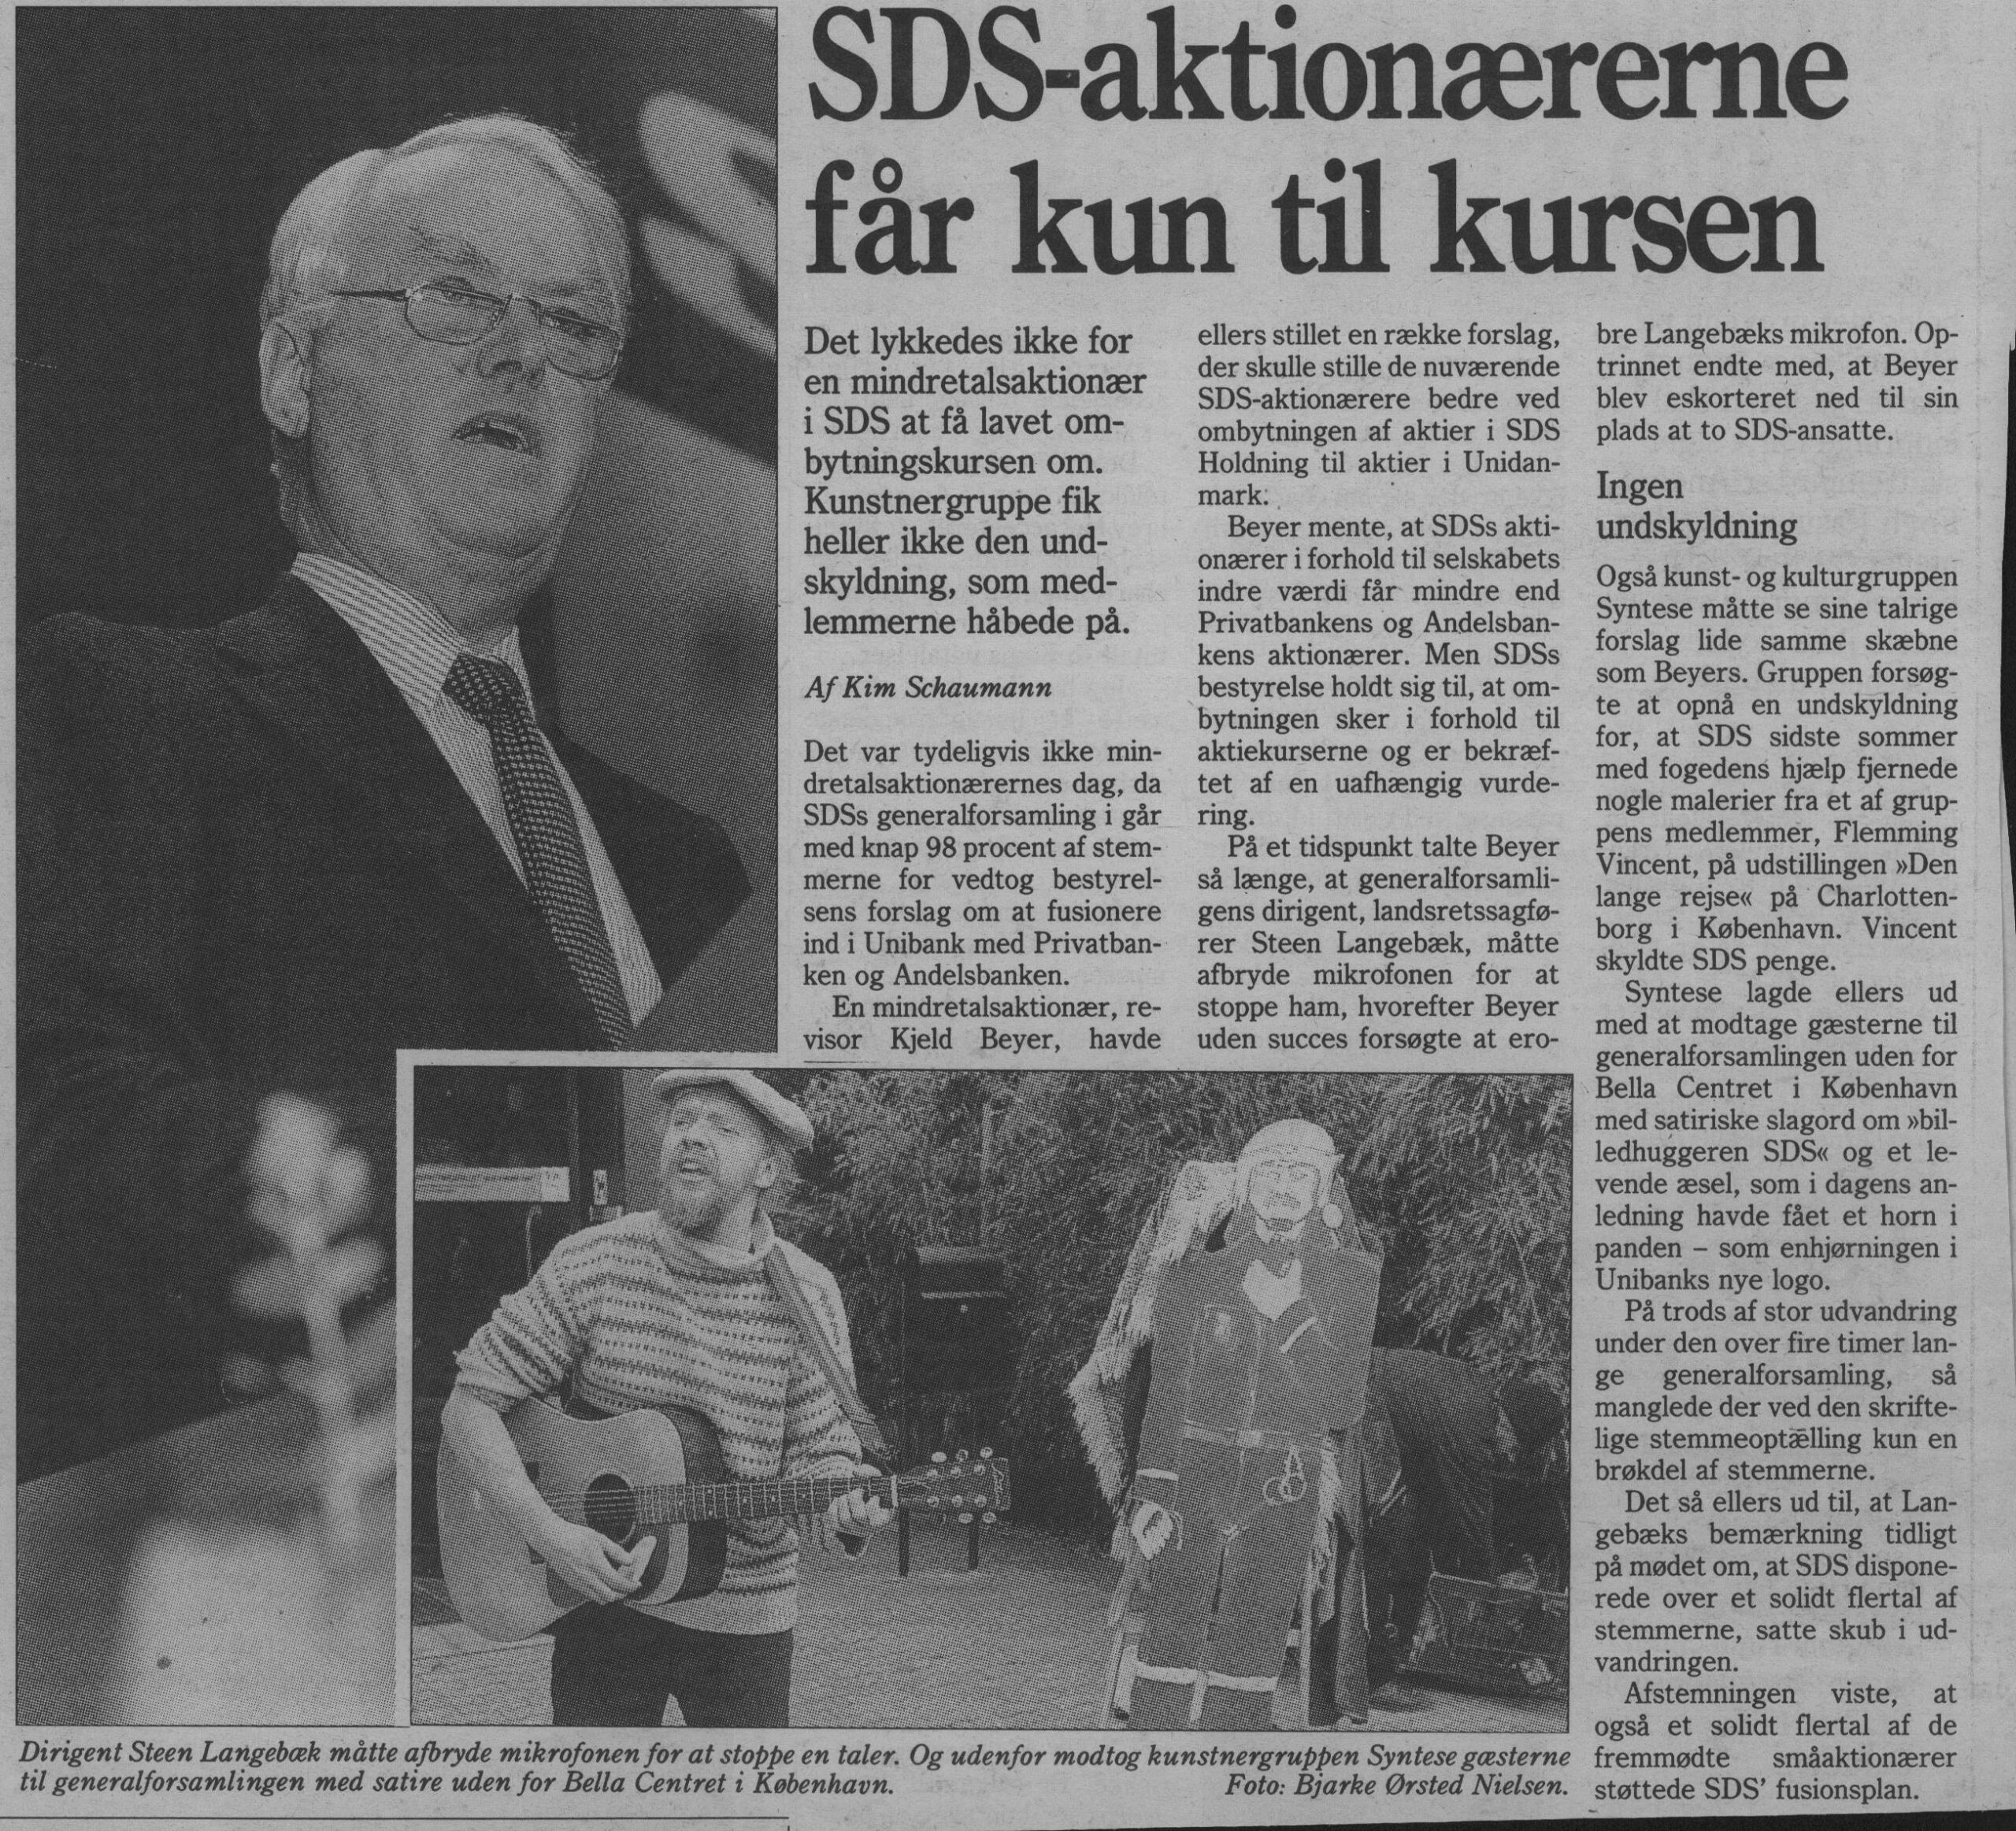 SDS-aktionærerne får kun til kursen. Omtale (Retssag. Den lange rejse, Charlottenborg, København 1989). Kim Schaumann. Berlingske Tidende.